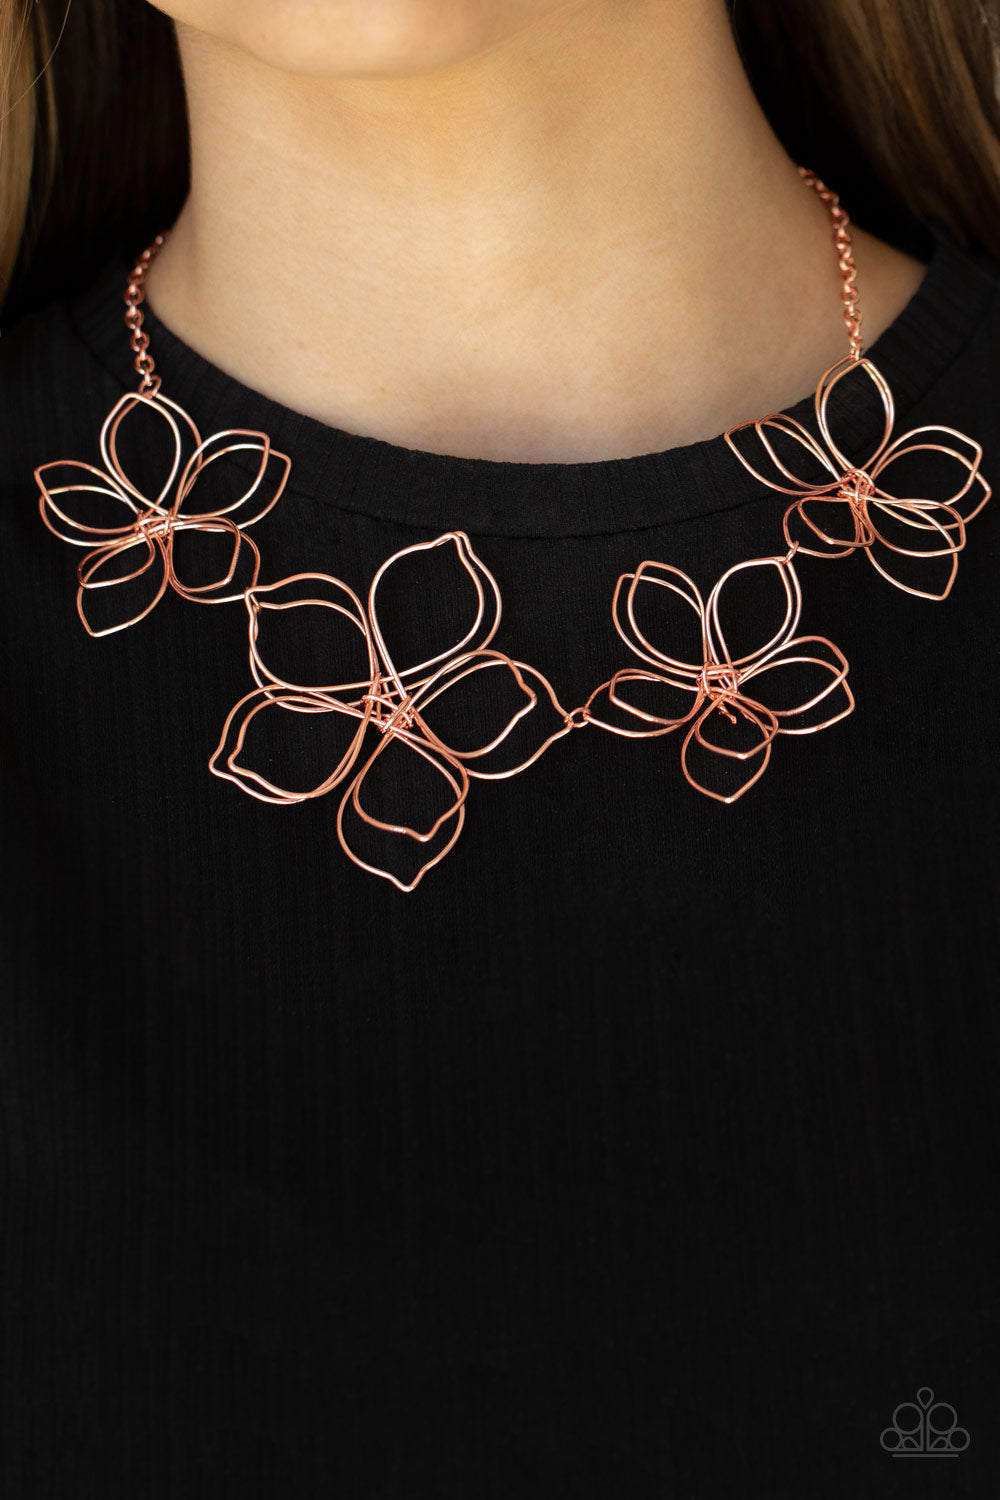 Paparazzi- Flower Garden Fashionista Copper Necklace